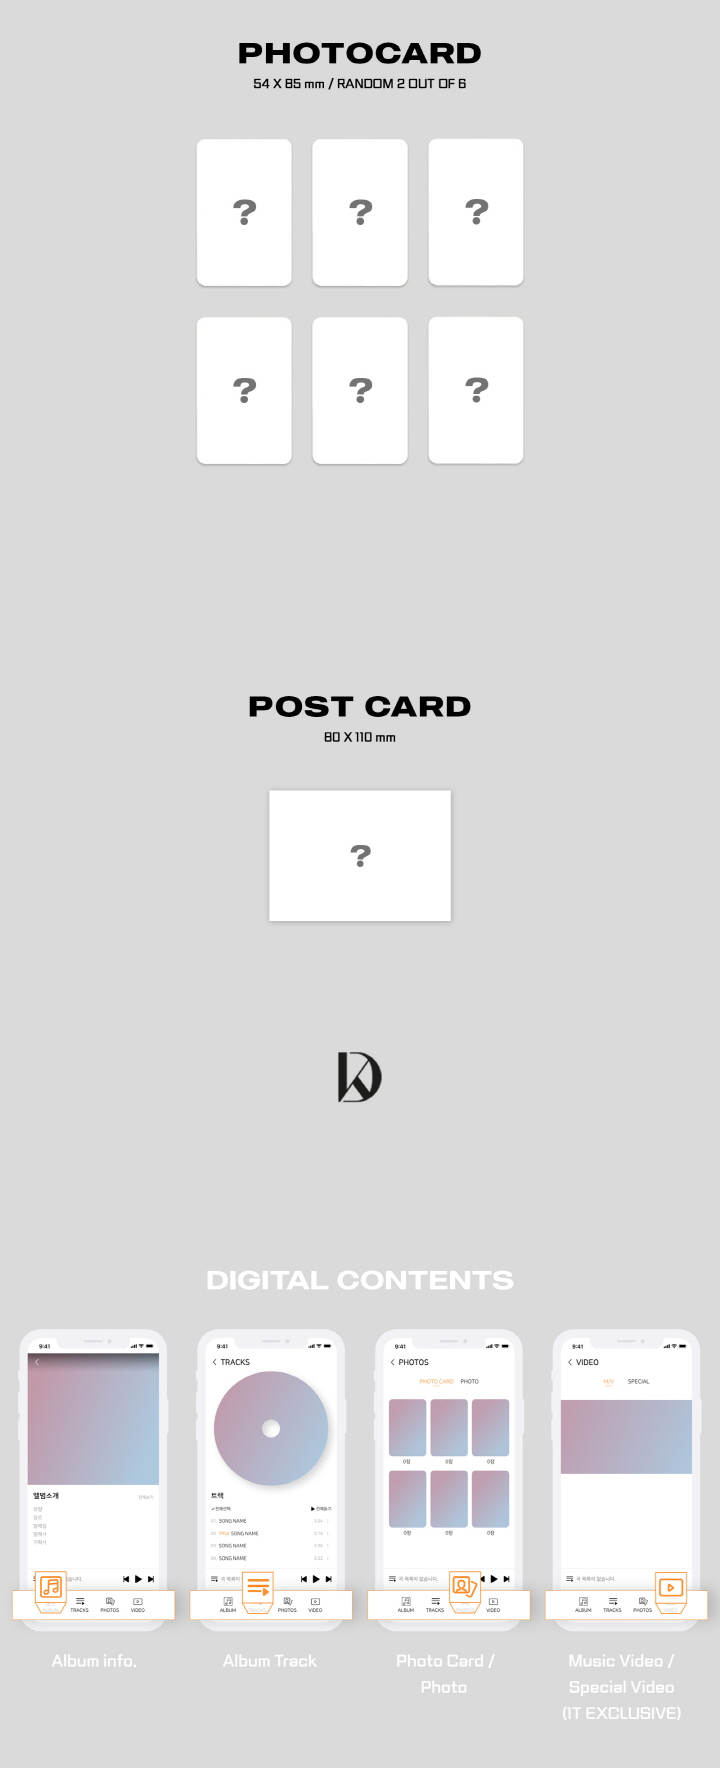 KANG DANIEL - [THE STORY] PLATFORM VER 1st Full Album